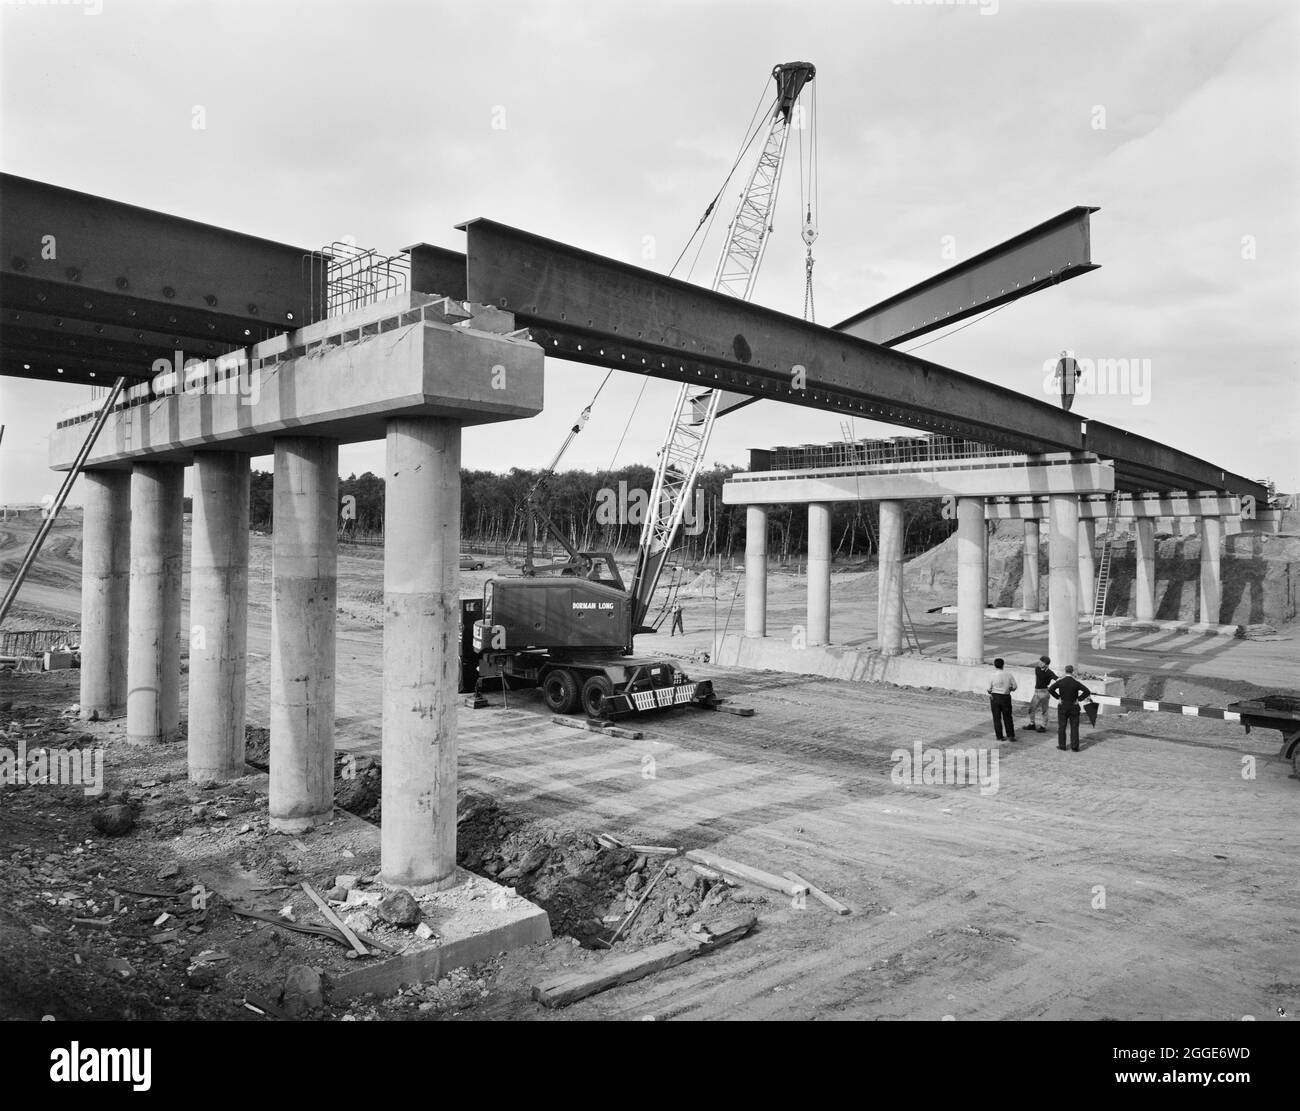 Ein Blick auf den Bau der Midland Link Autobahn, zwischen Junction 13 und Junction 11 der M6, zeigt Stahlträger, die auf einer der Brücken abgesenkt wurden. Dieses Foto wurde im Oktober 1964 in Laings monatlichem Newsletter „Team Spirit“ veröffentlicht. Stockfoto